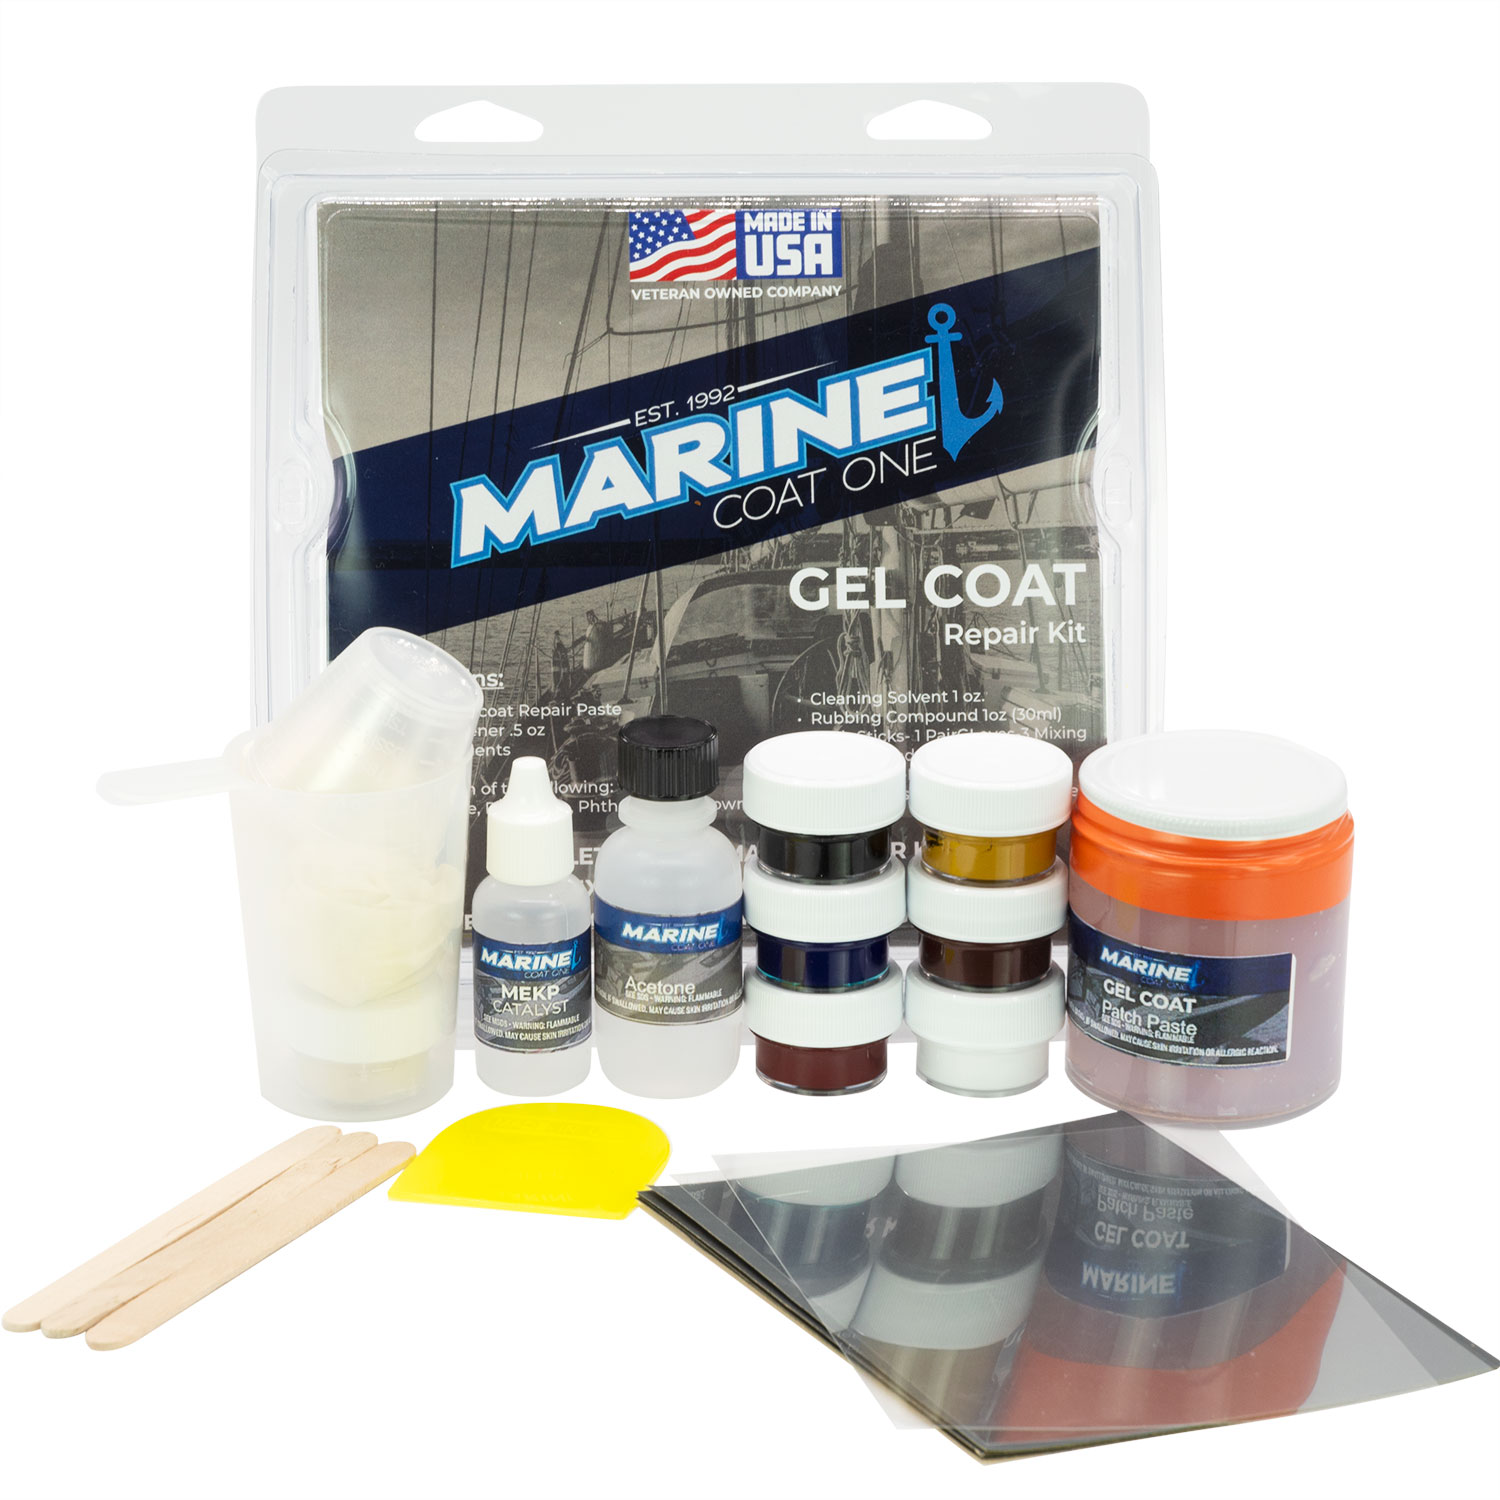 Marine Coat One, Black Gelcoat Repair Kit for Boat, Fiberglass Gel Coat Restoration (Black with Wax, quart)